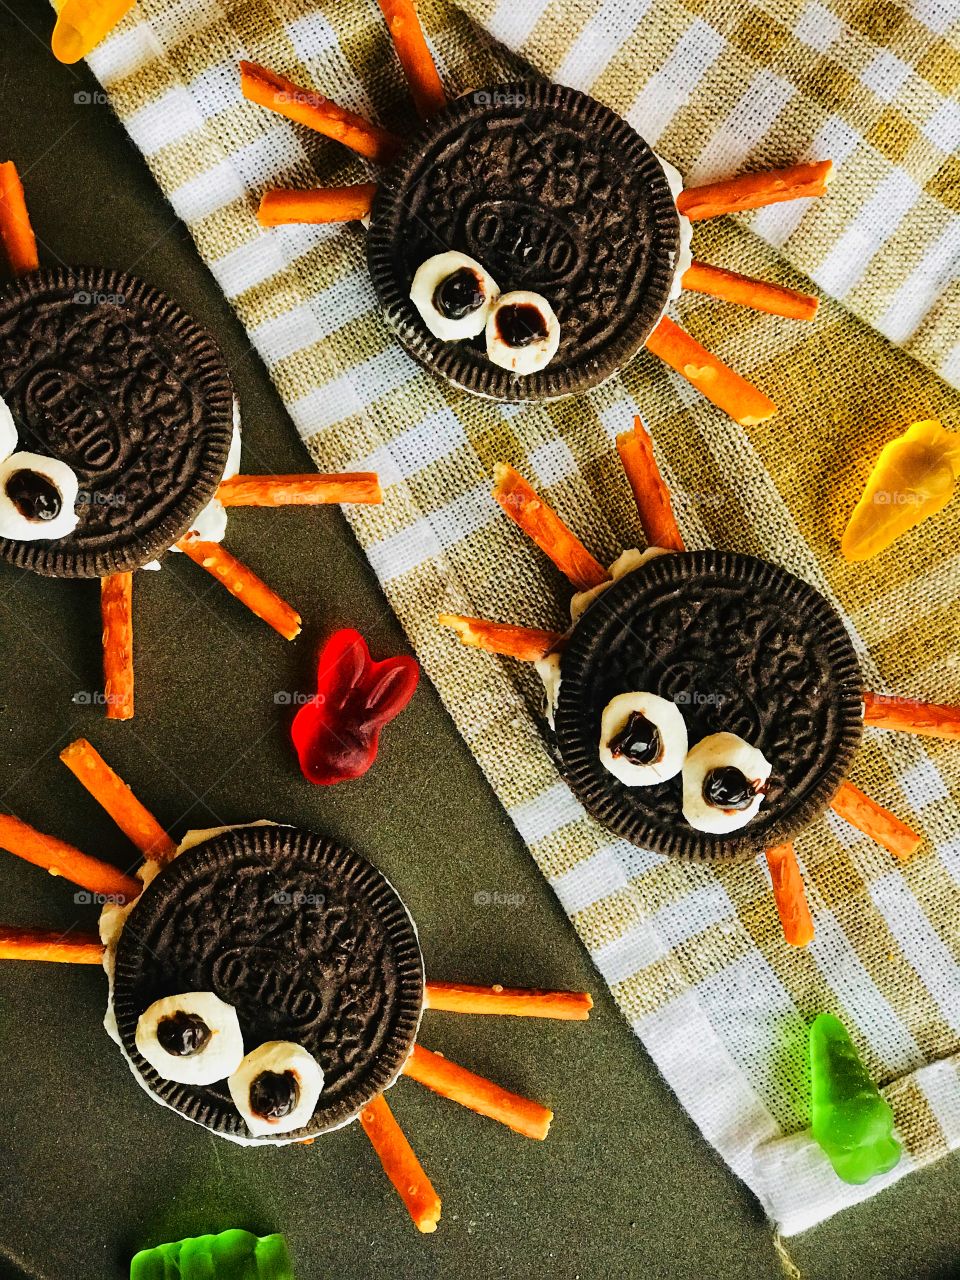 cookie monsters!